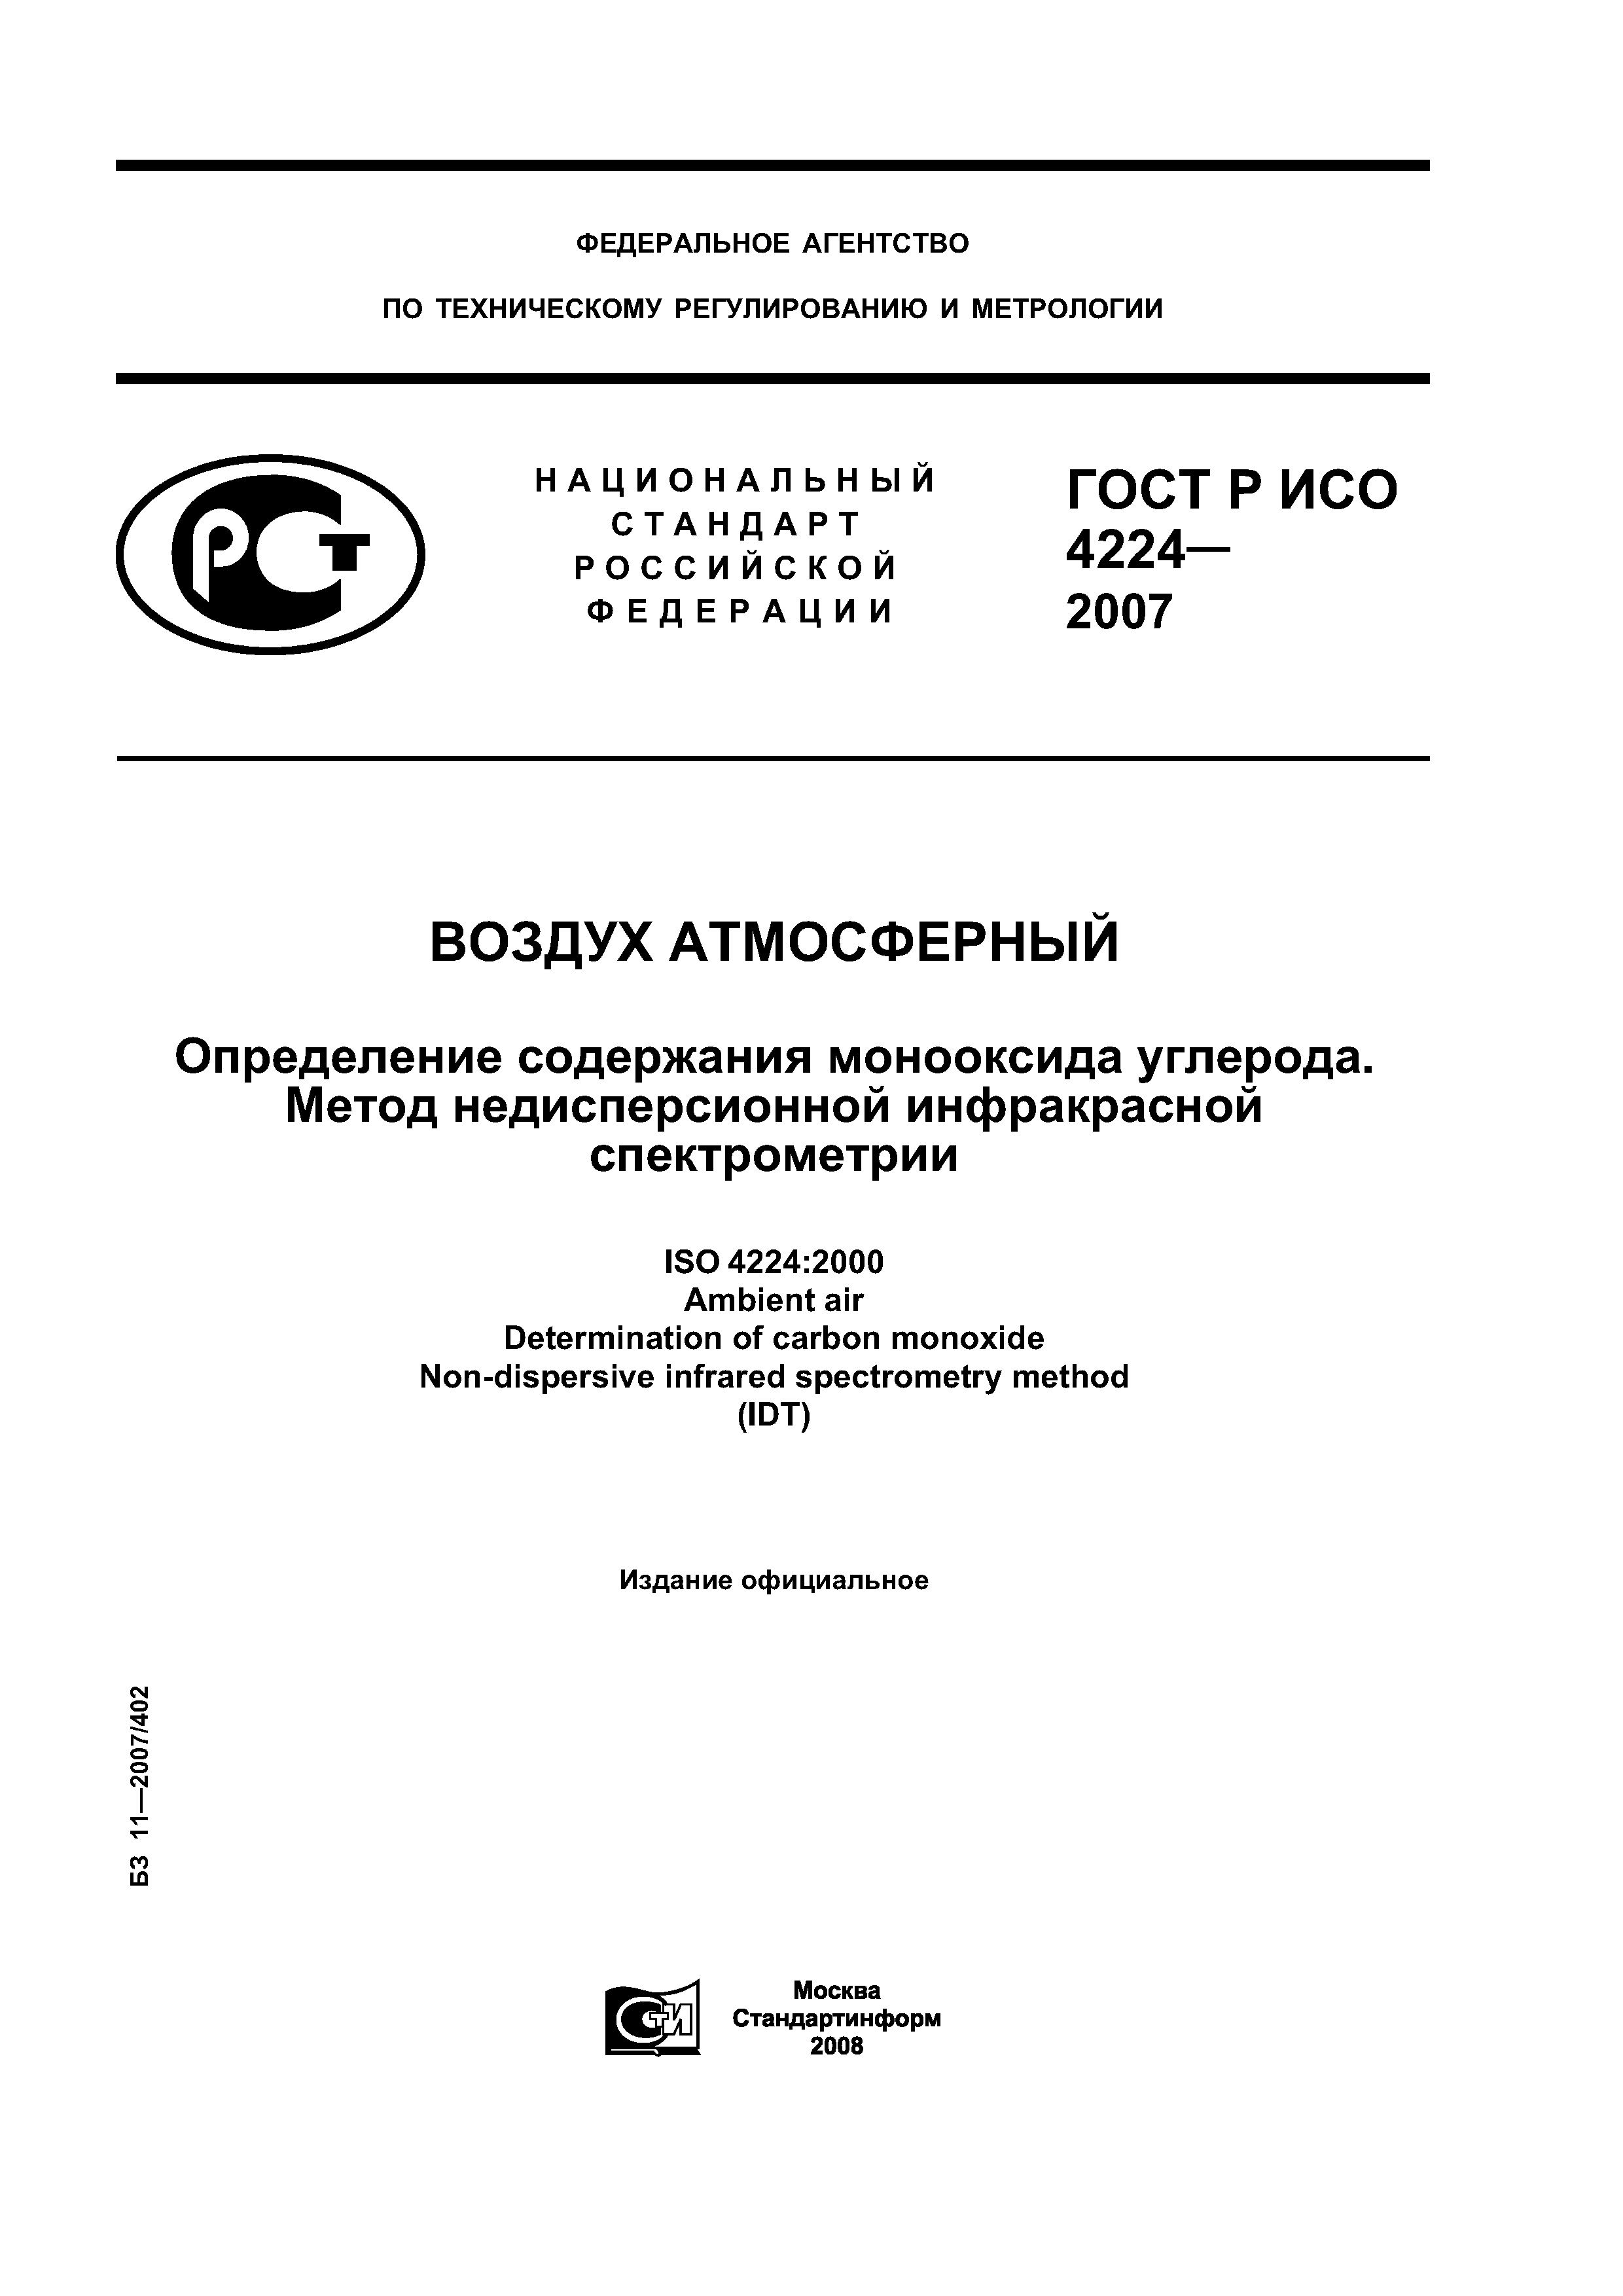 ГОСТ Р ИСО 4224-2007